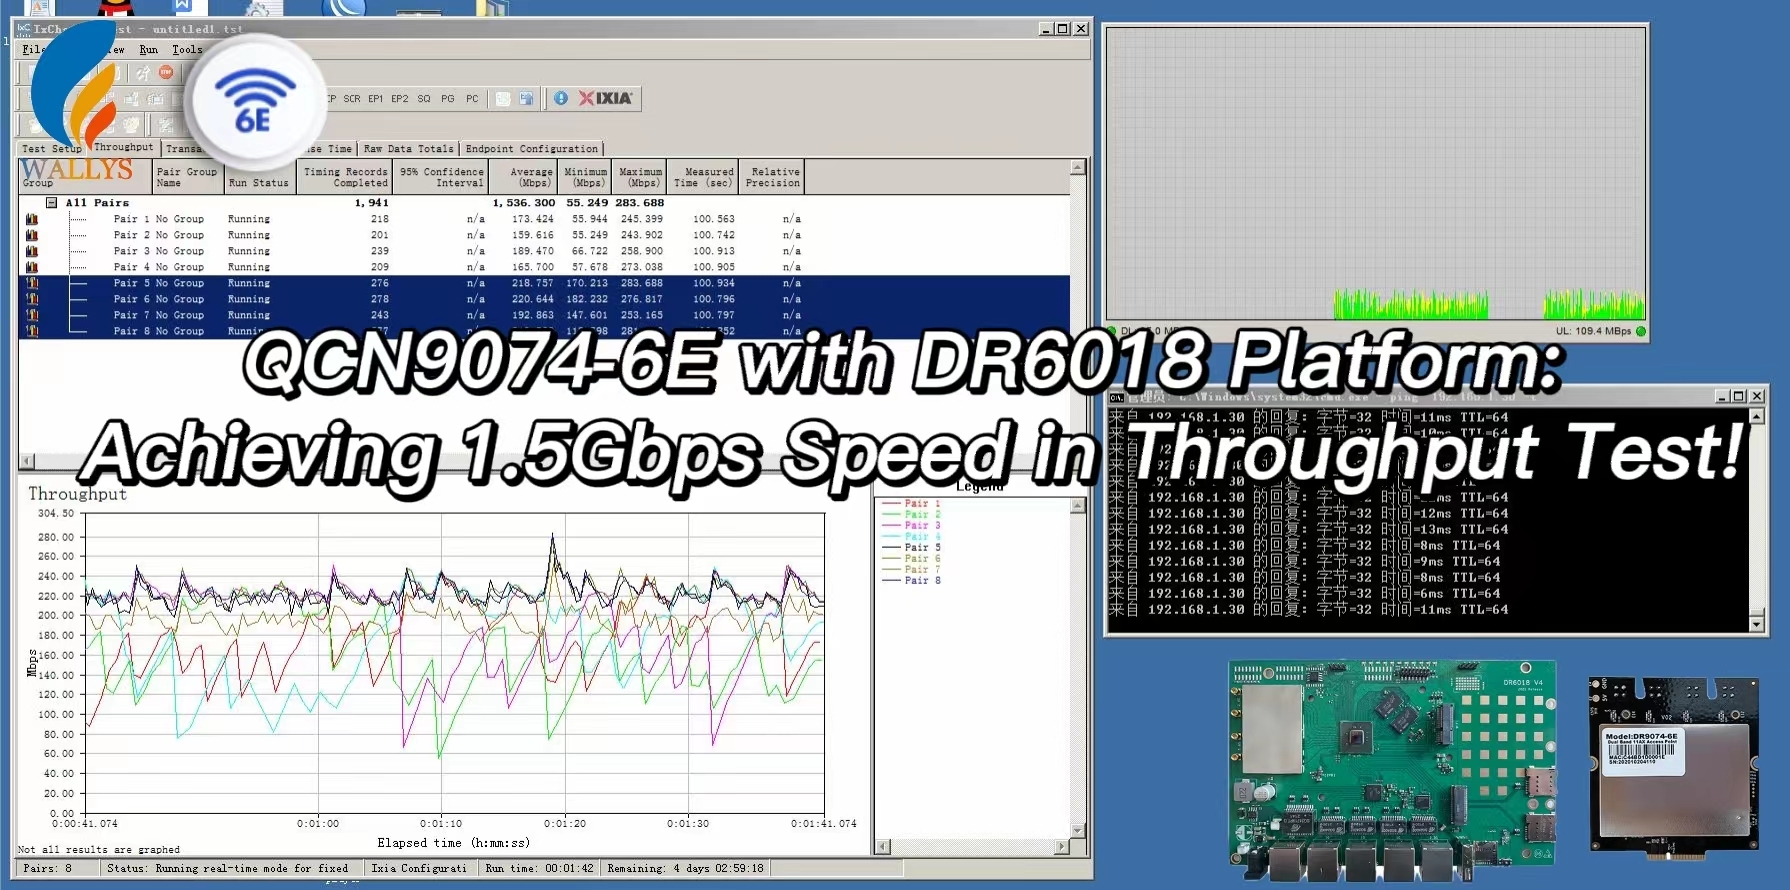 IPQ6010+QCN9074|QCN9074-6E Throughput Test Report in DR6018